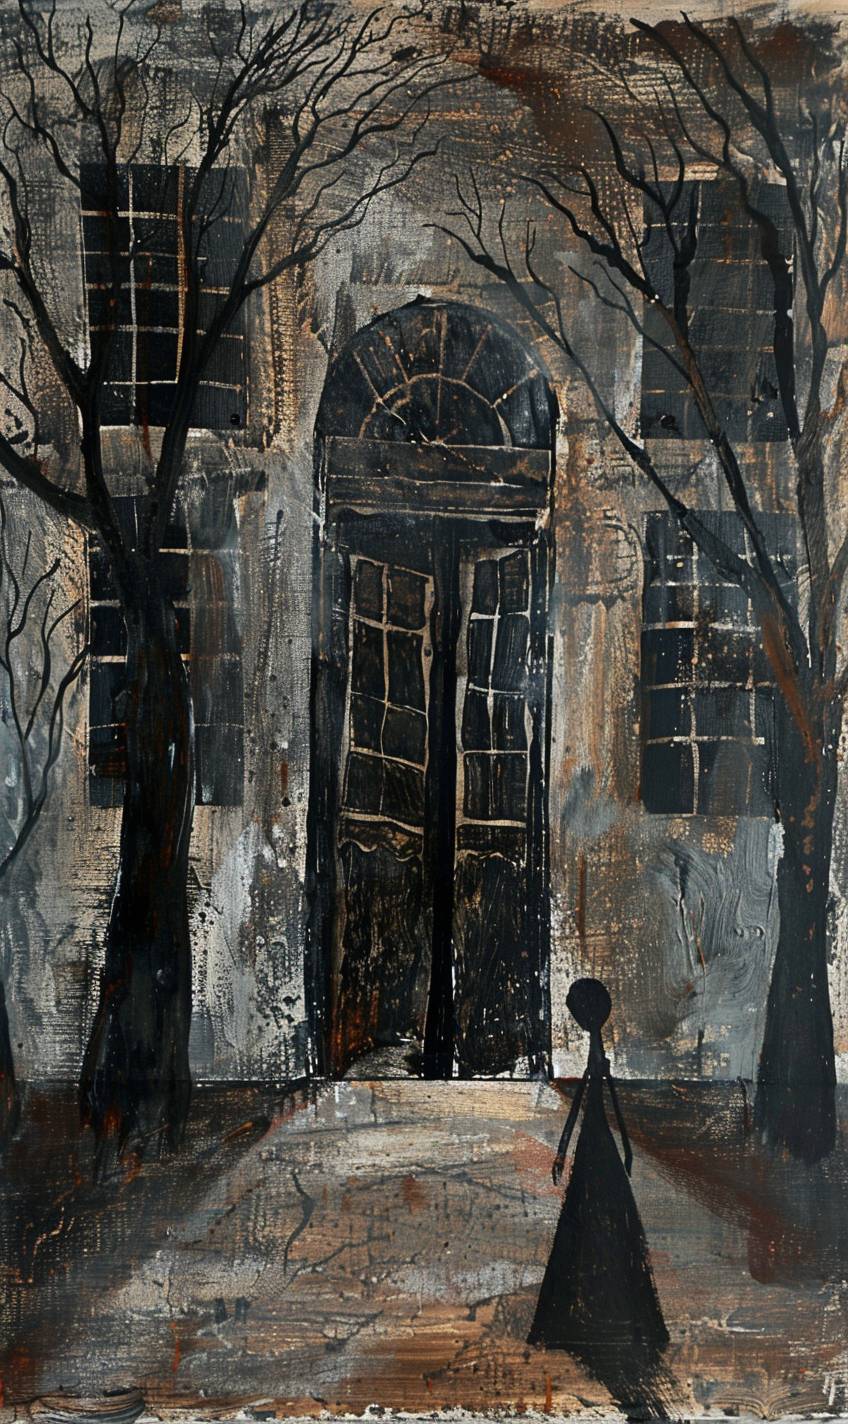 ゲイリー・バント風のスタイル、きしむドアと影のある幽霊館